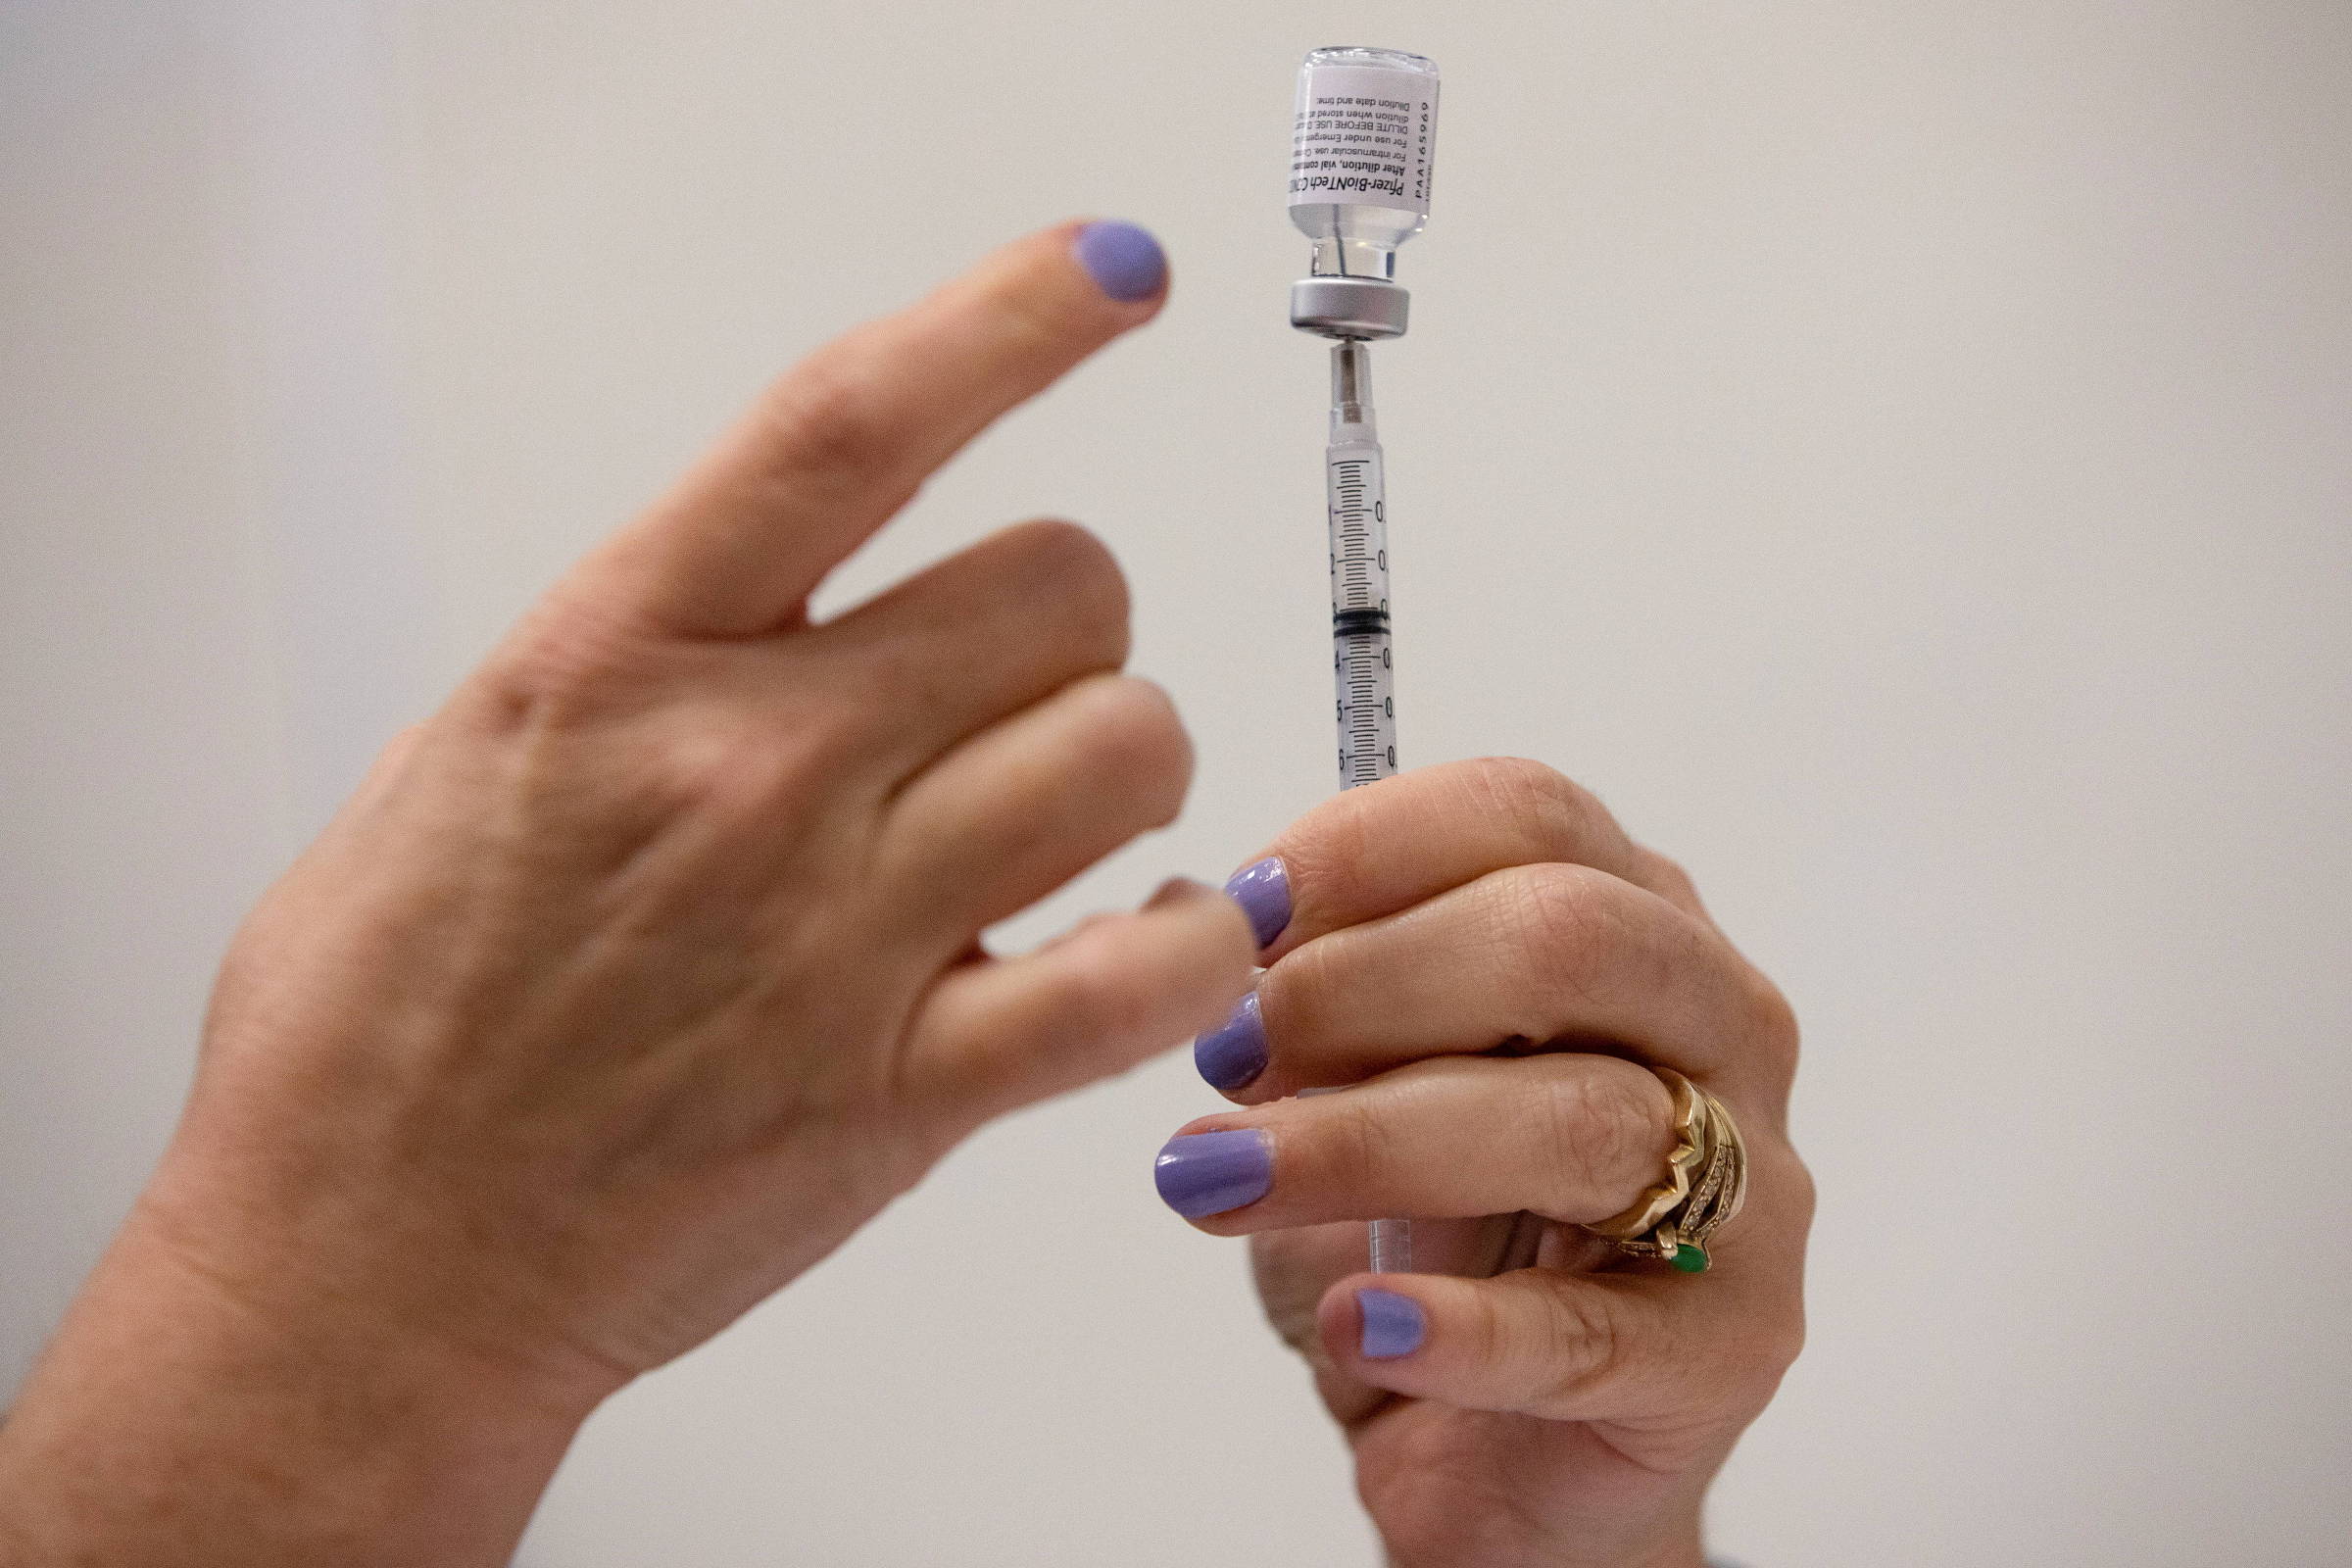 Agência europeia aprova terceira dose de vacina da Pfizer para todos os adultos - 04/10/2021 - Equilíbrio e Saúde - Folha